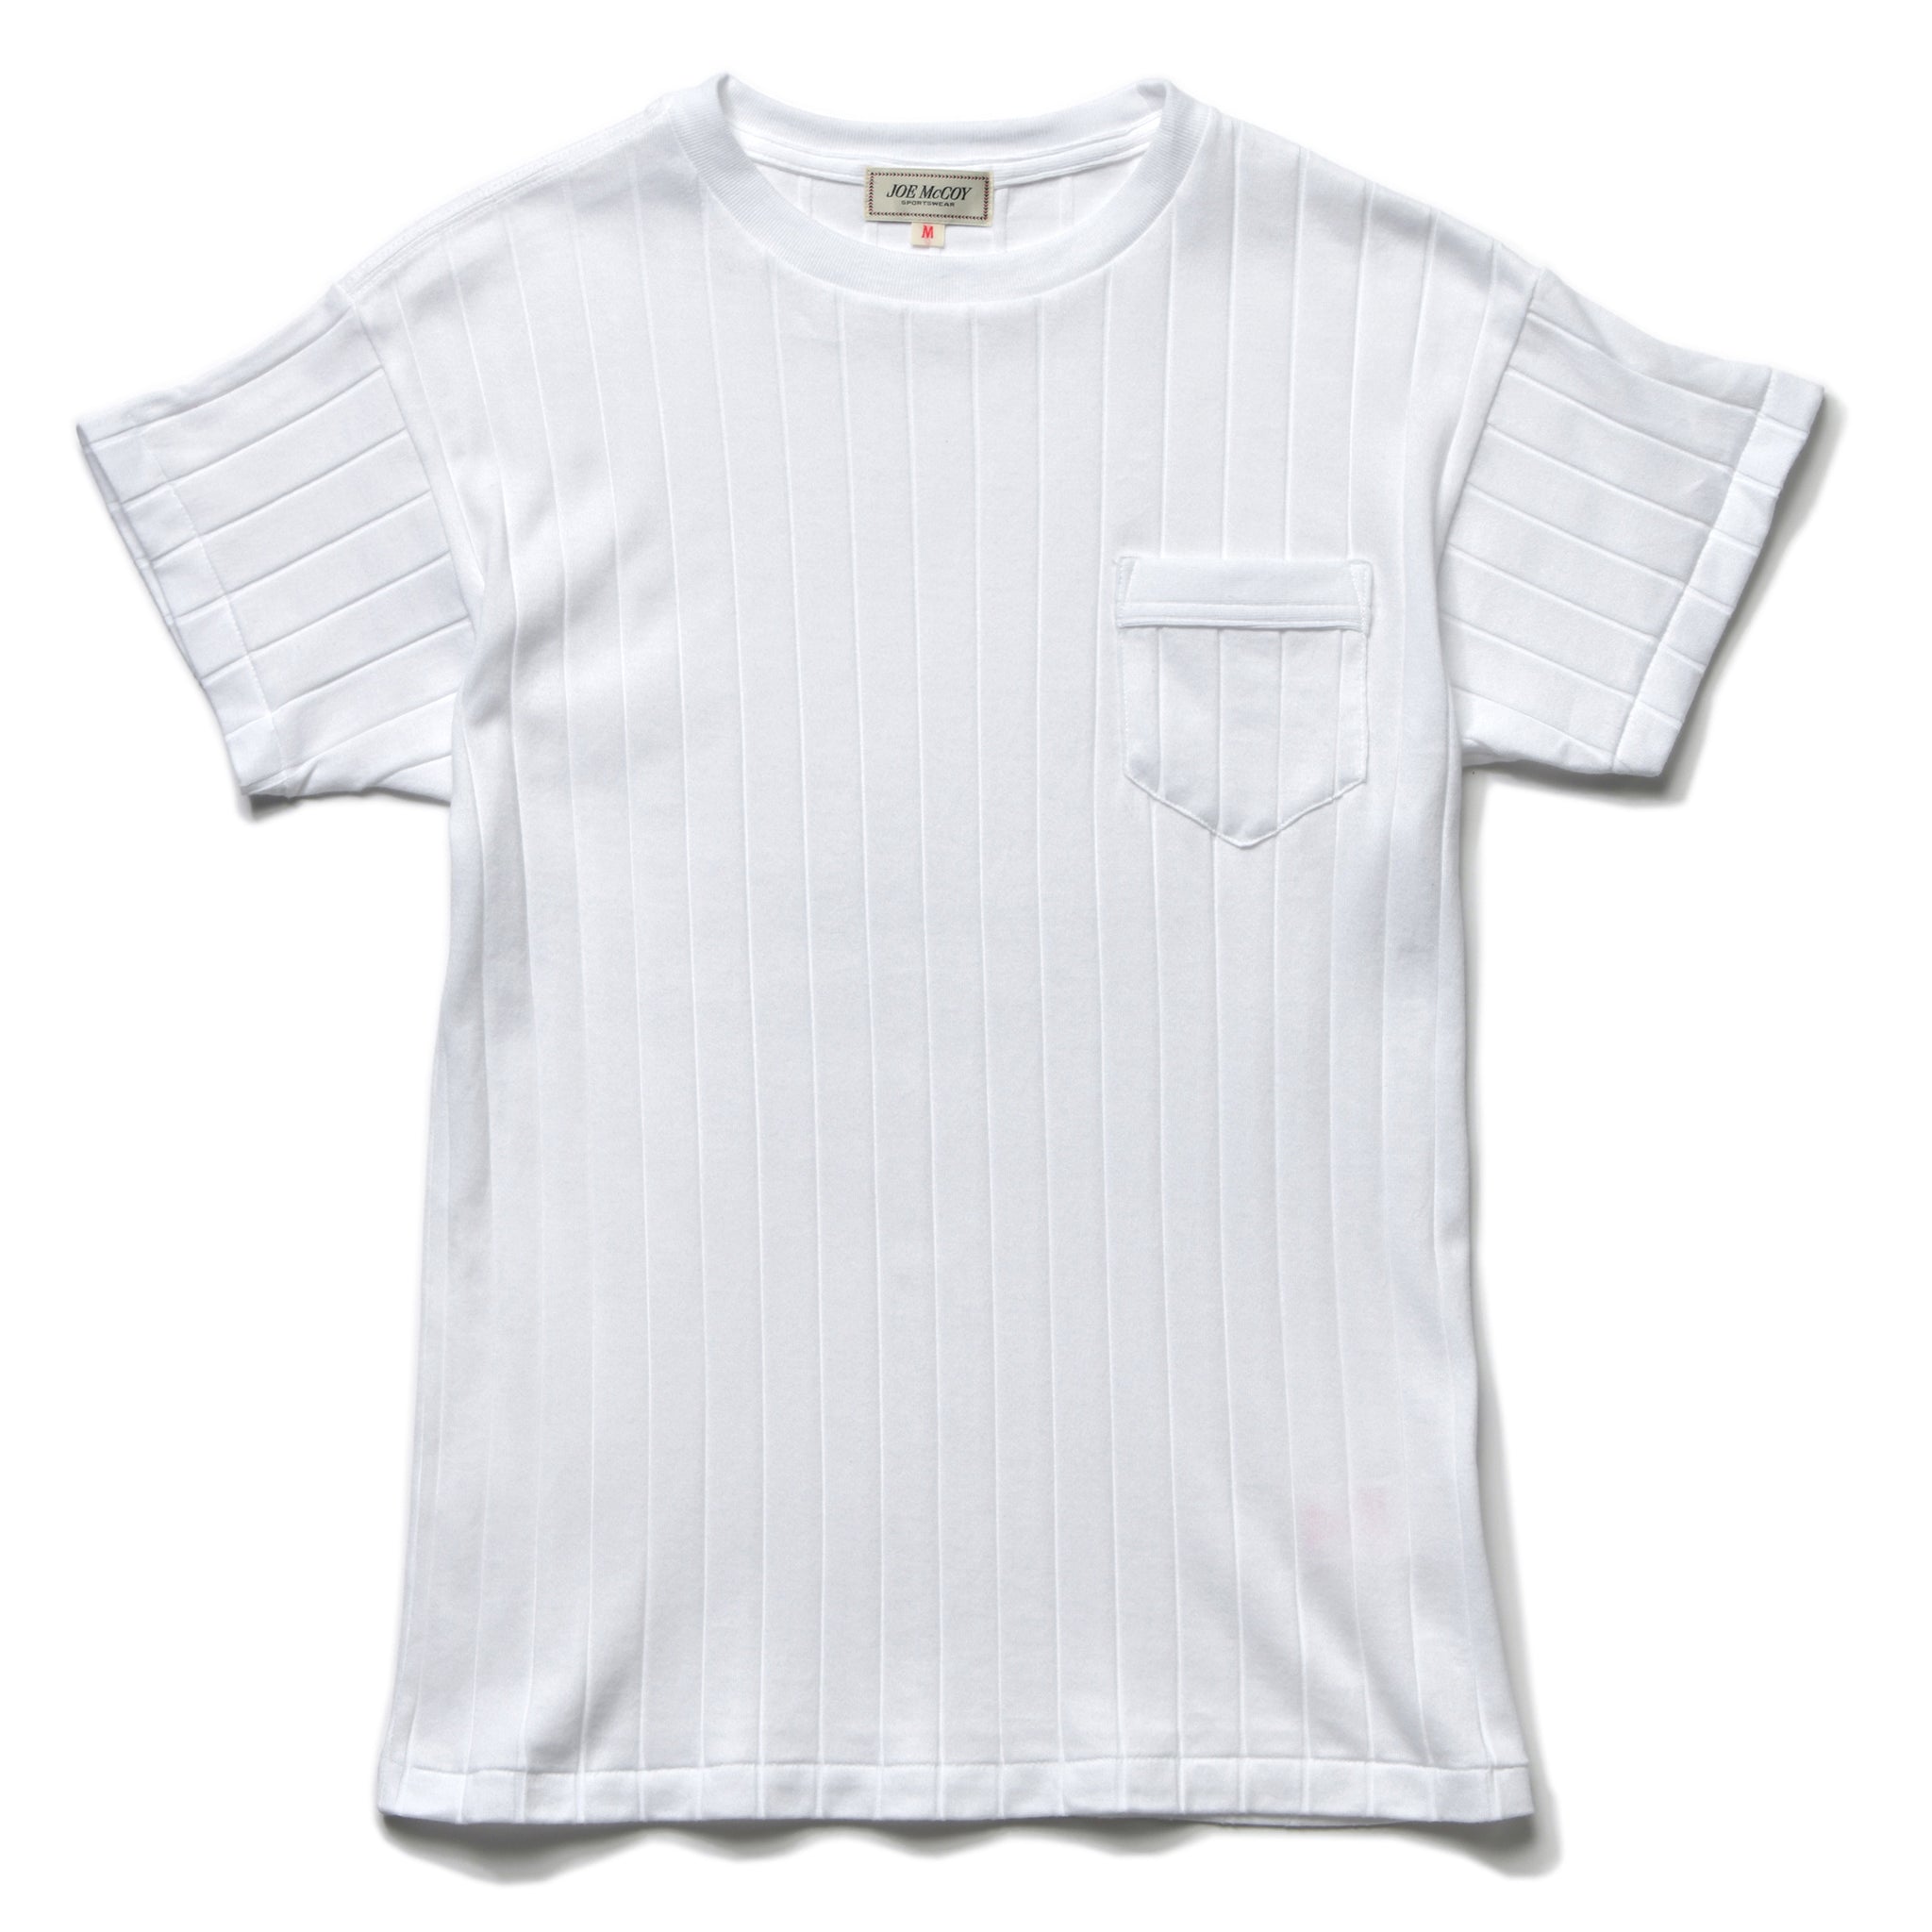 Rib Pocket T-shirt | Navy | Knickerbocker